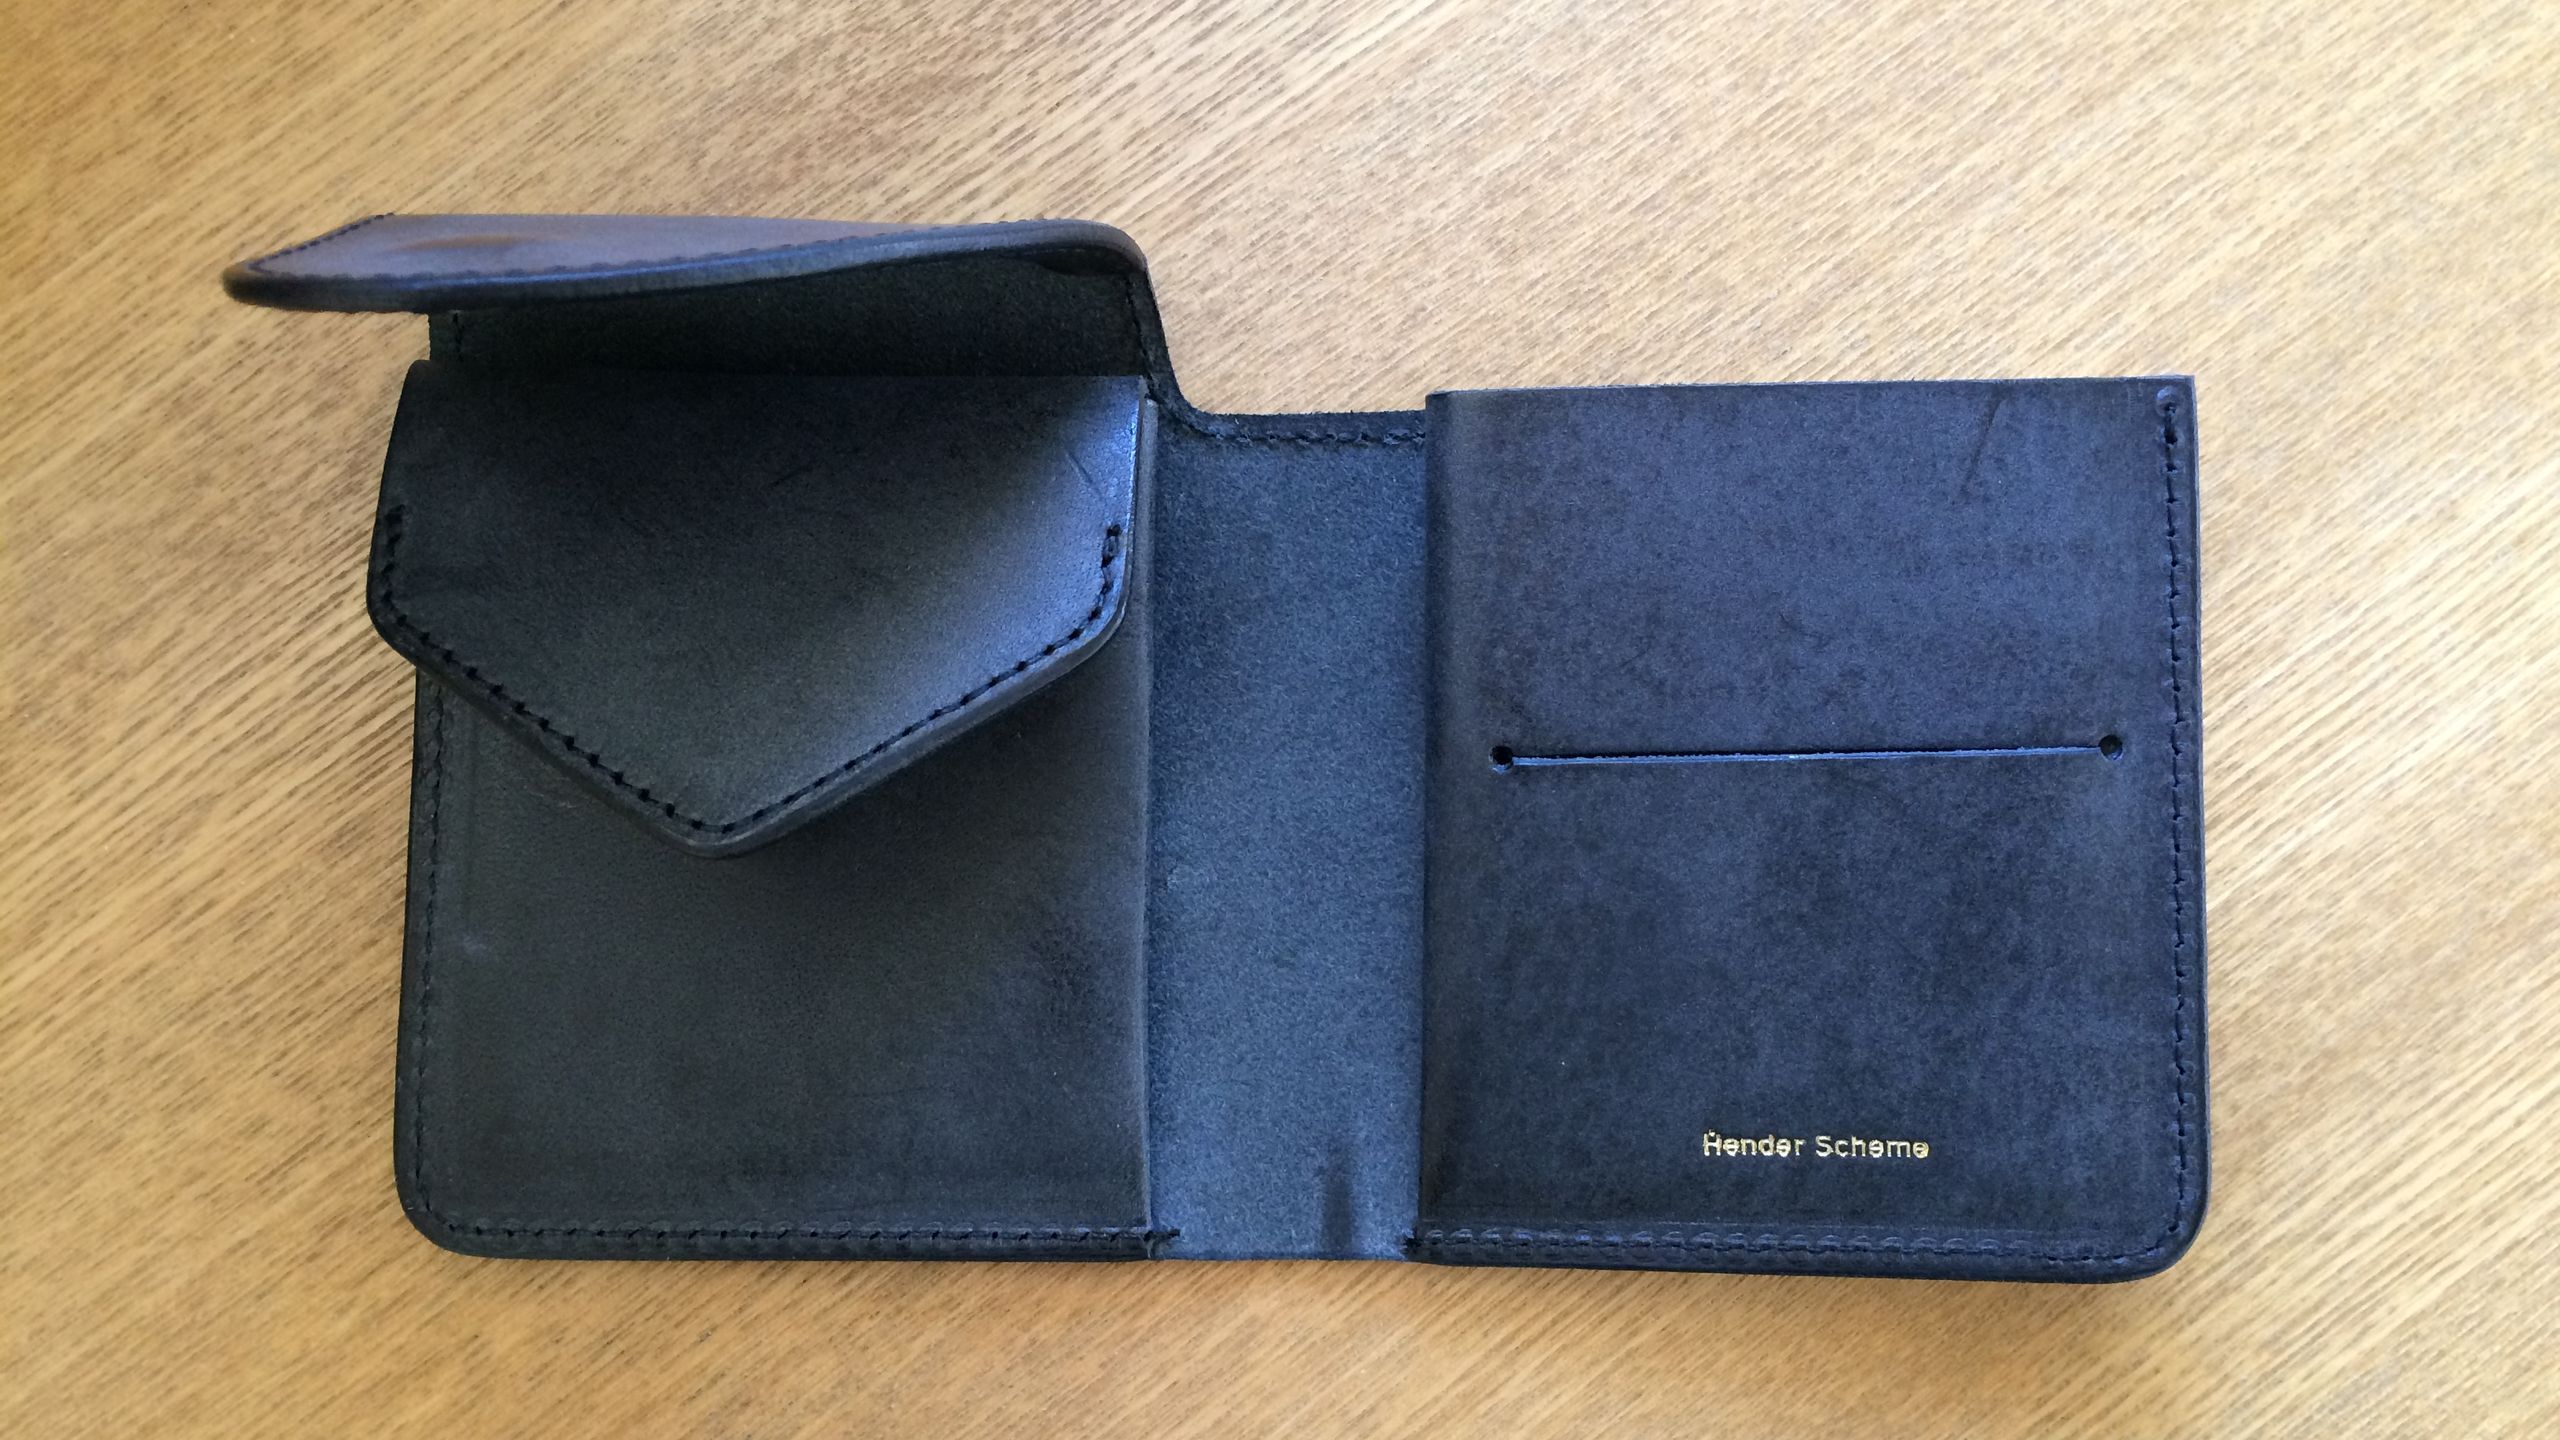 袋状小銭いれ(ボタンなし)と同じく袋状のカード収納、札入れがコンパクトにまとまっているHender Schemeの財布。